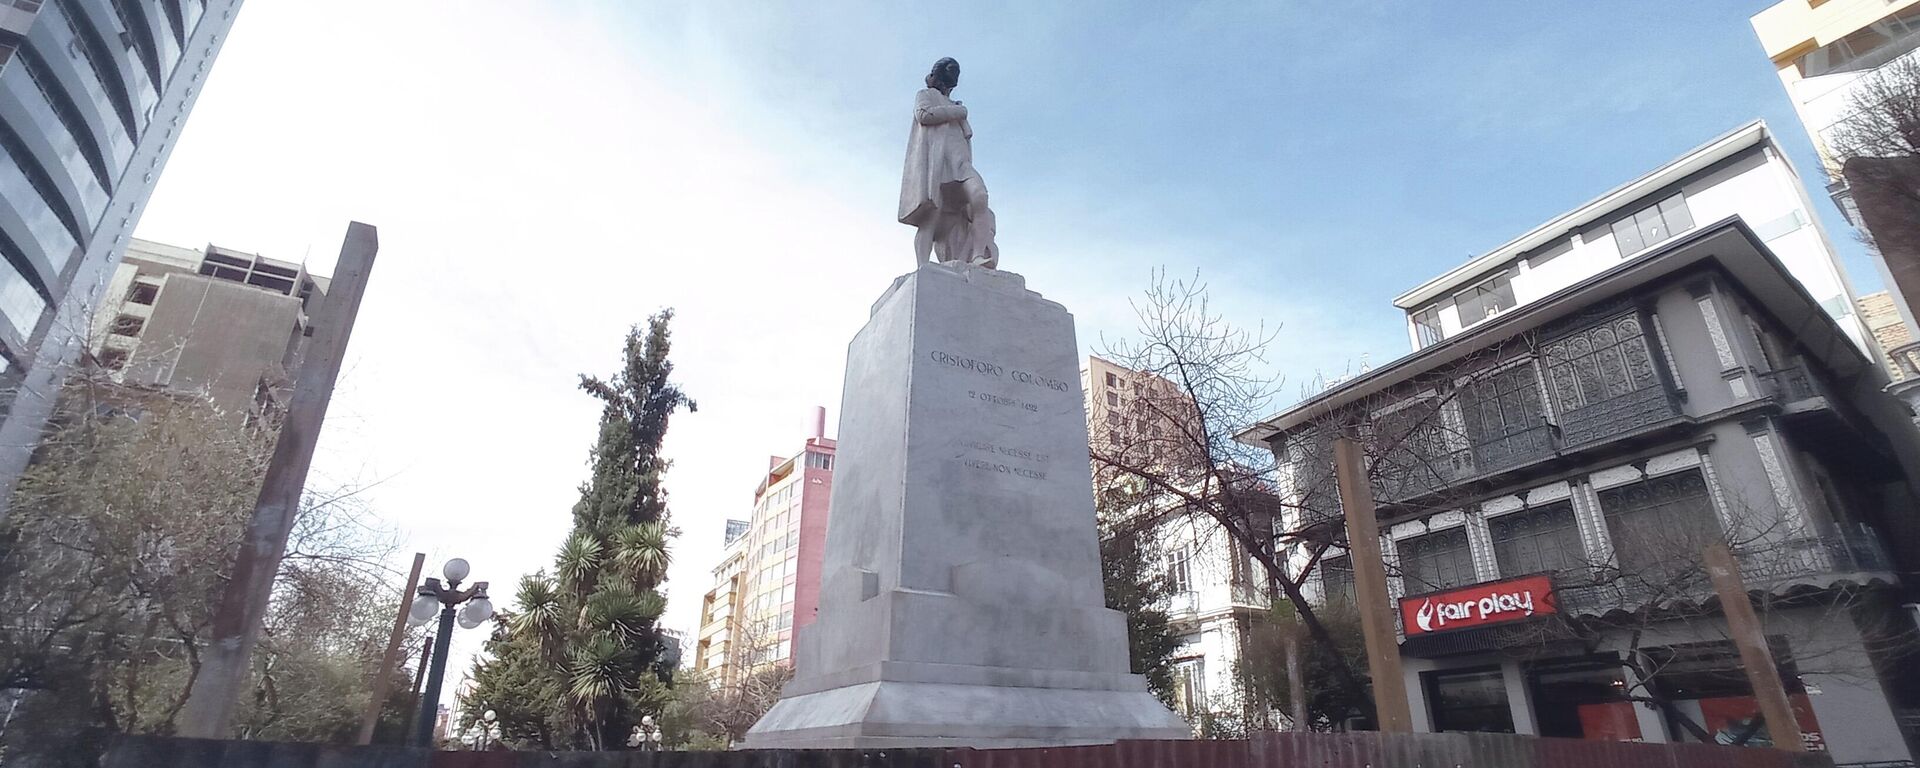 Estatua de Cristóbal Colón en La Paz, Bolivia - Sputnik Mundo, 1920, 05.08.2021